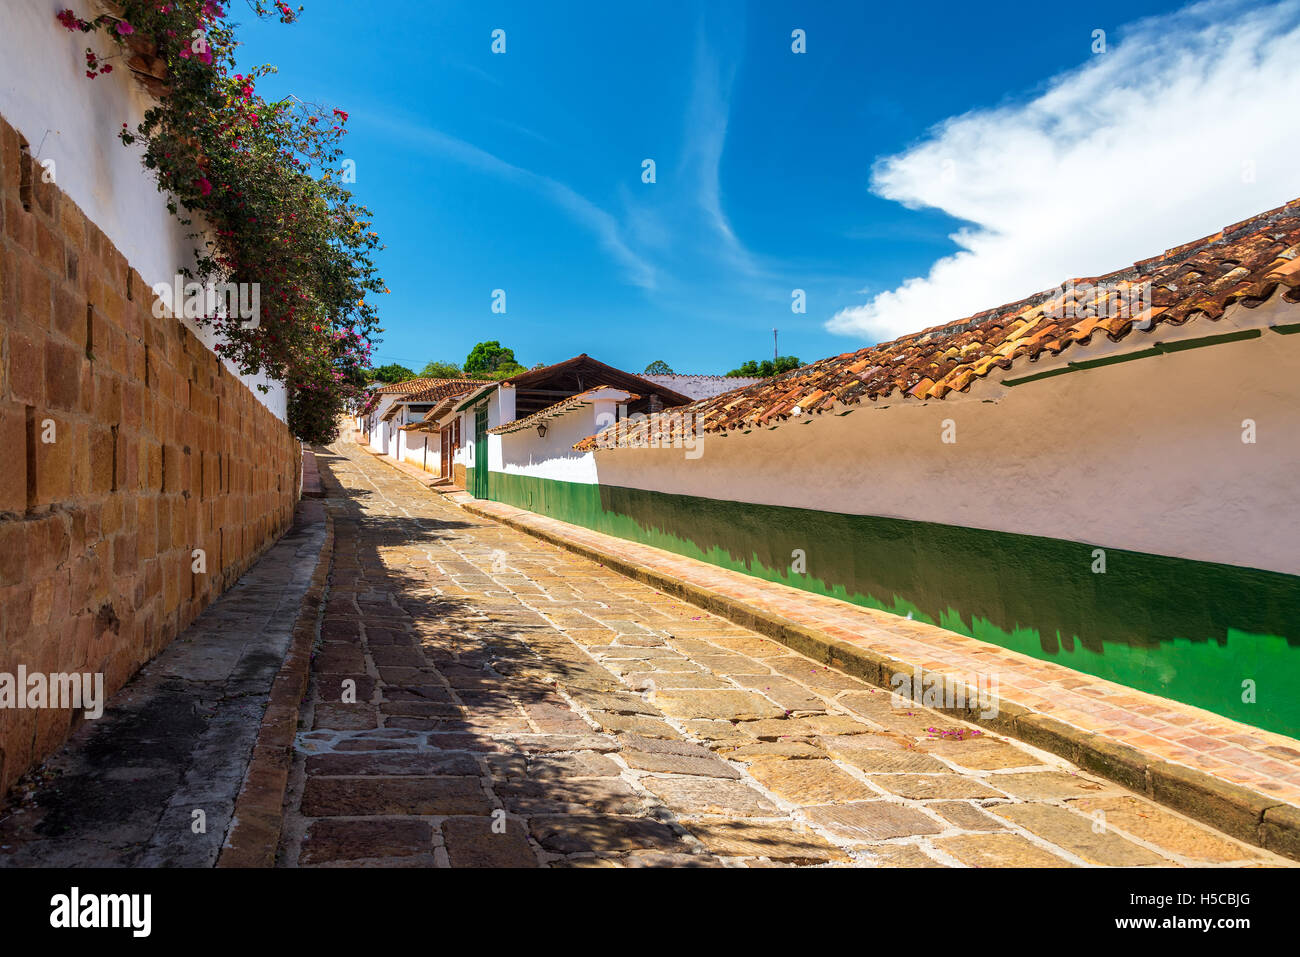 Vista della strada coloniale nella storica cittadina di Barichara, Colombia Foto Stock